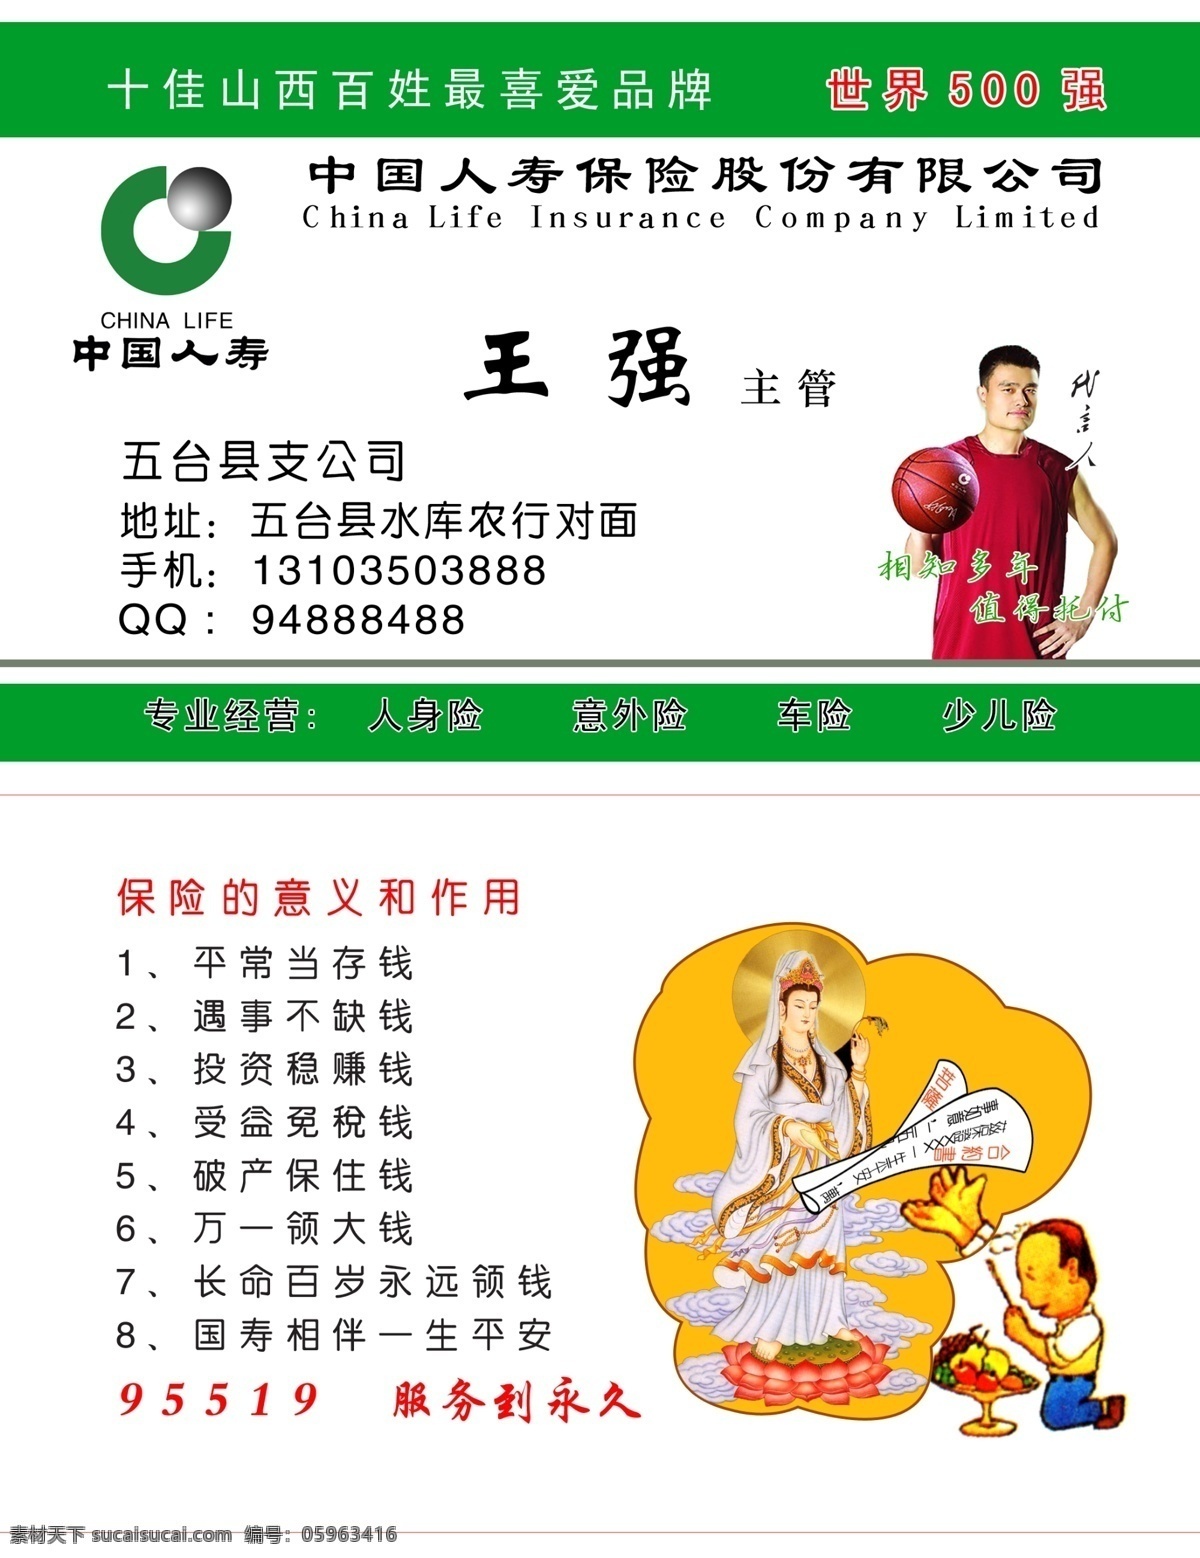 保险公司名片 中国人寿 保险公司 名片模板 名片卡片 广告设计模板 源文件